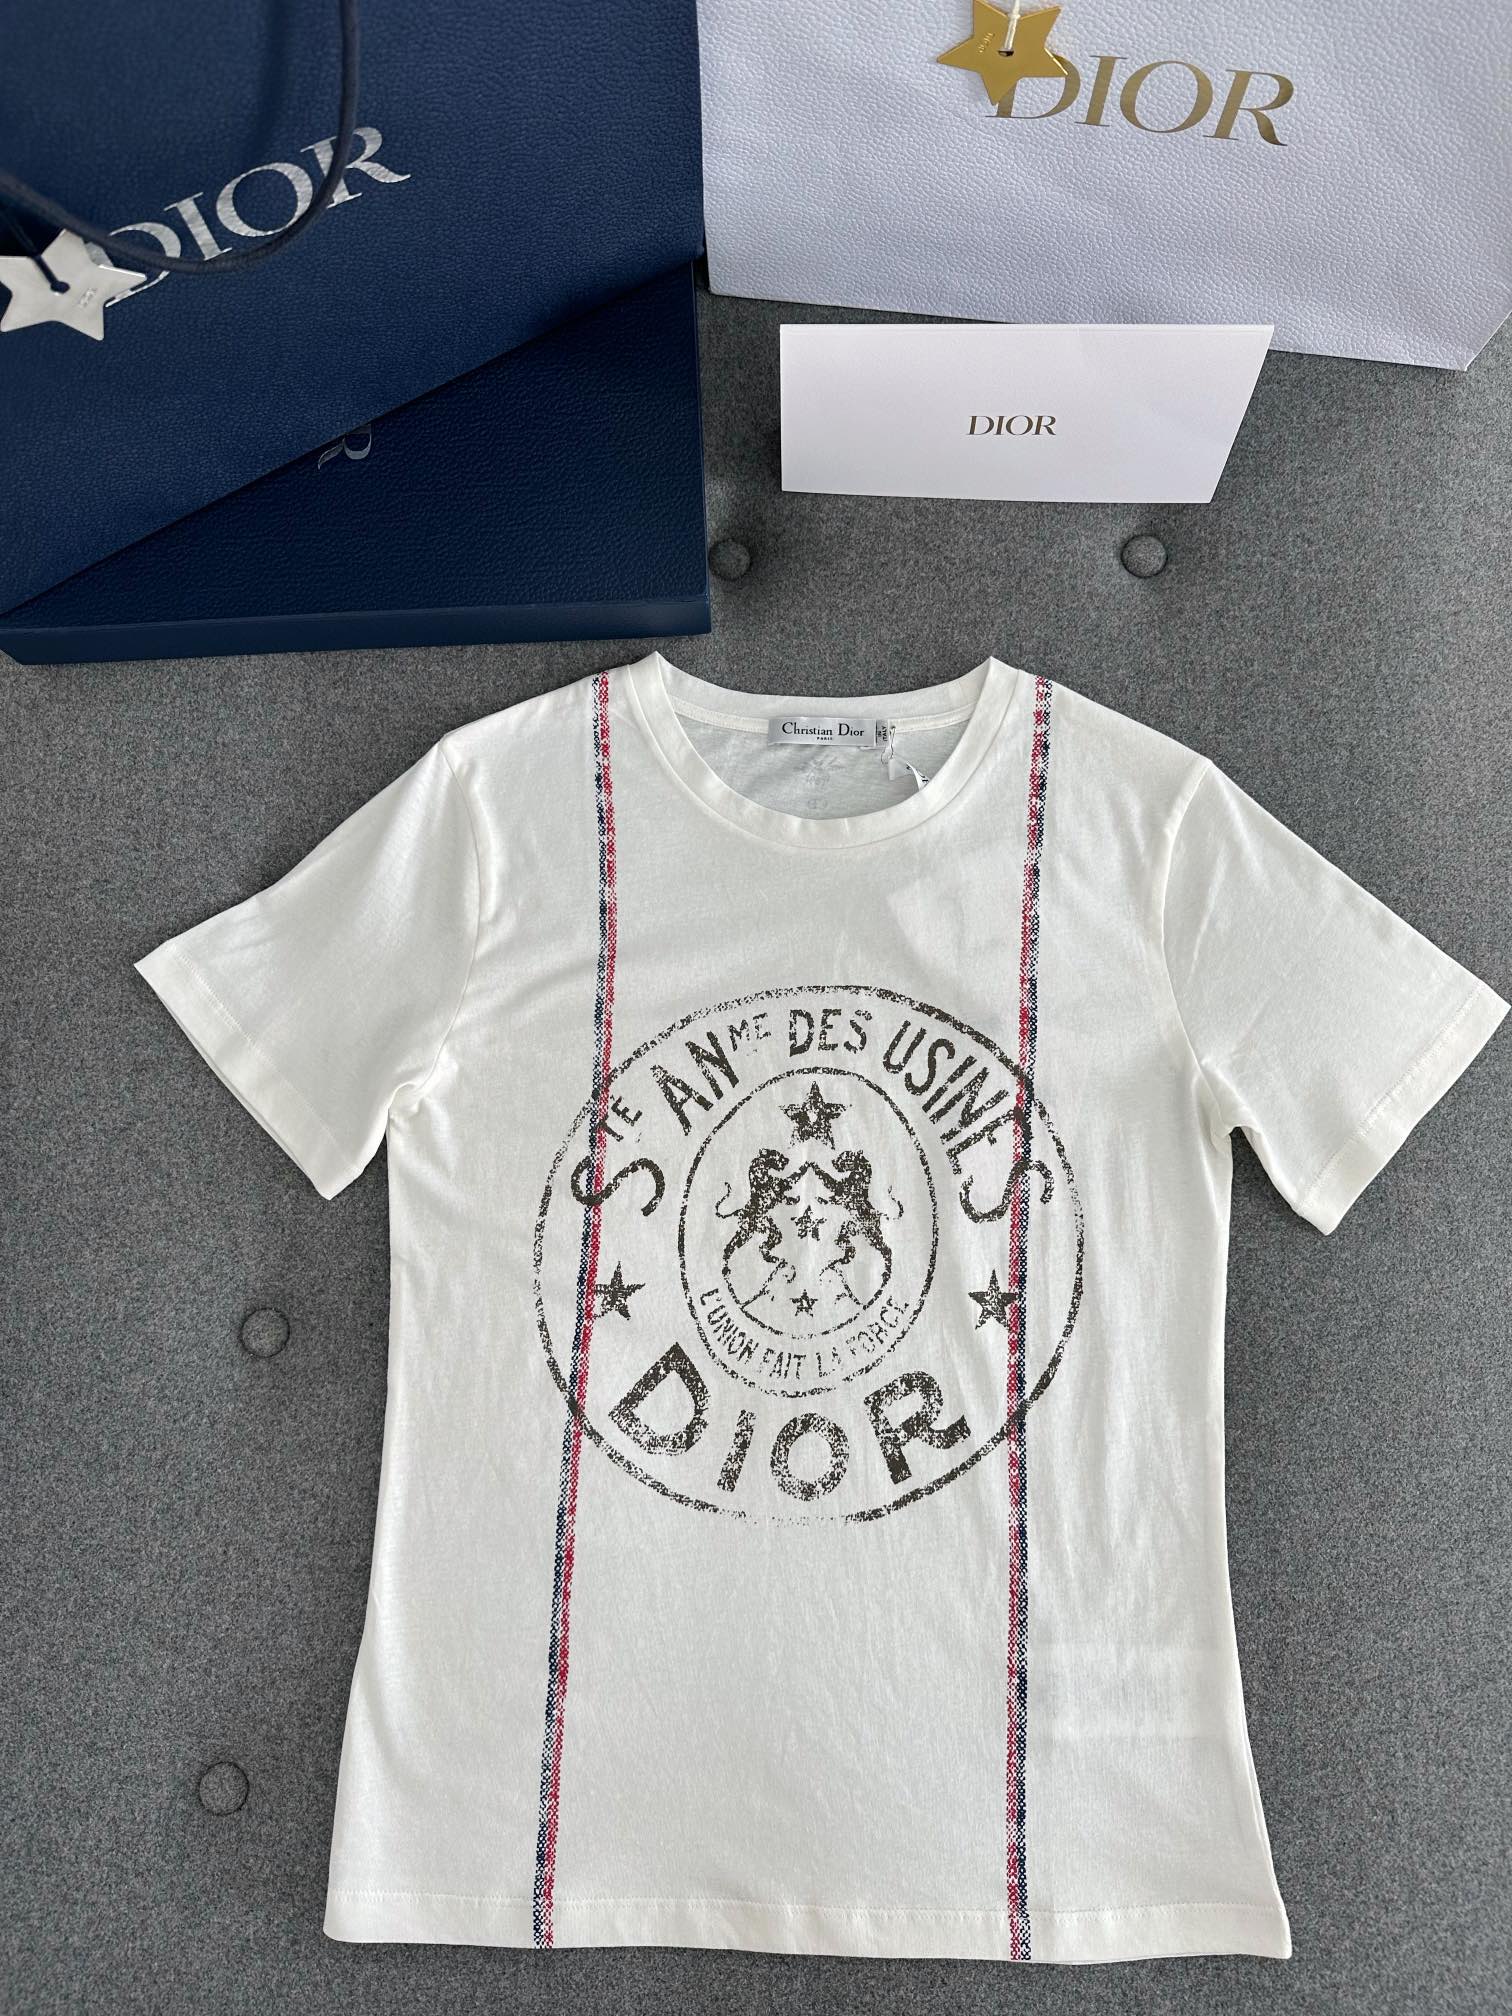 Dior Kleding T-Shirt Geel Afdrukken Katoen Linnen